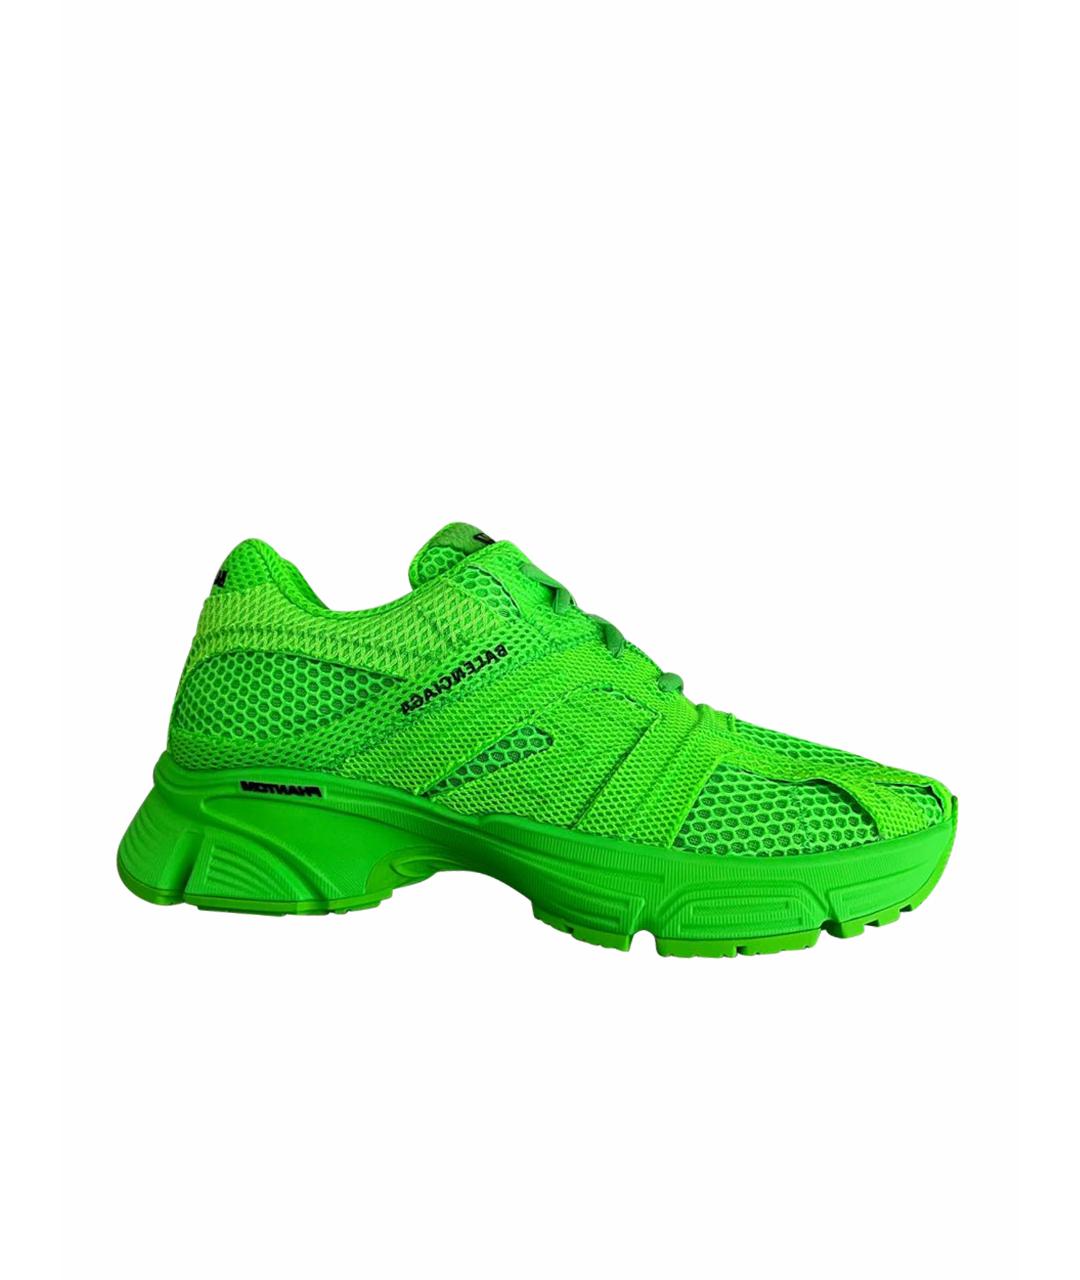 BALENCIAGA Зеленые кроссовки, фото 1